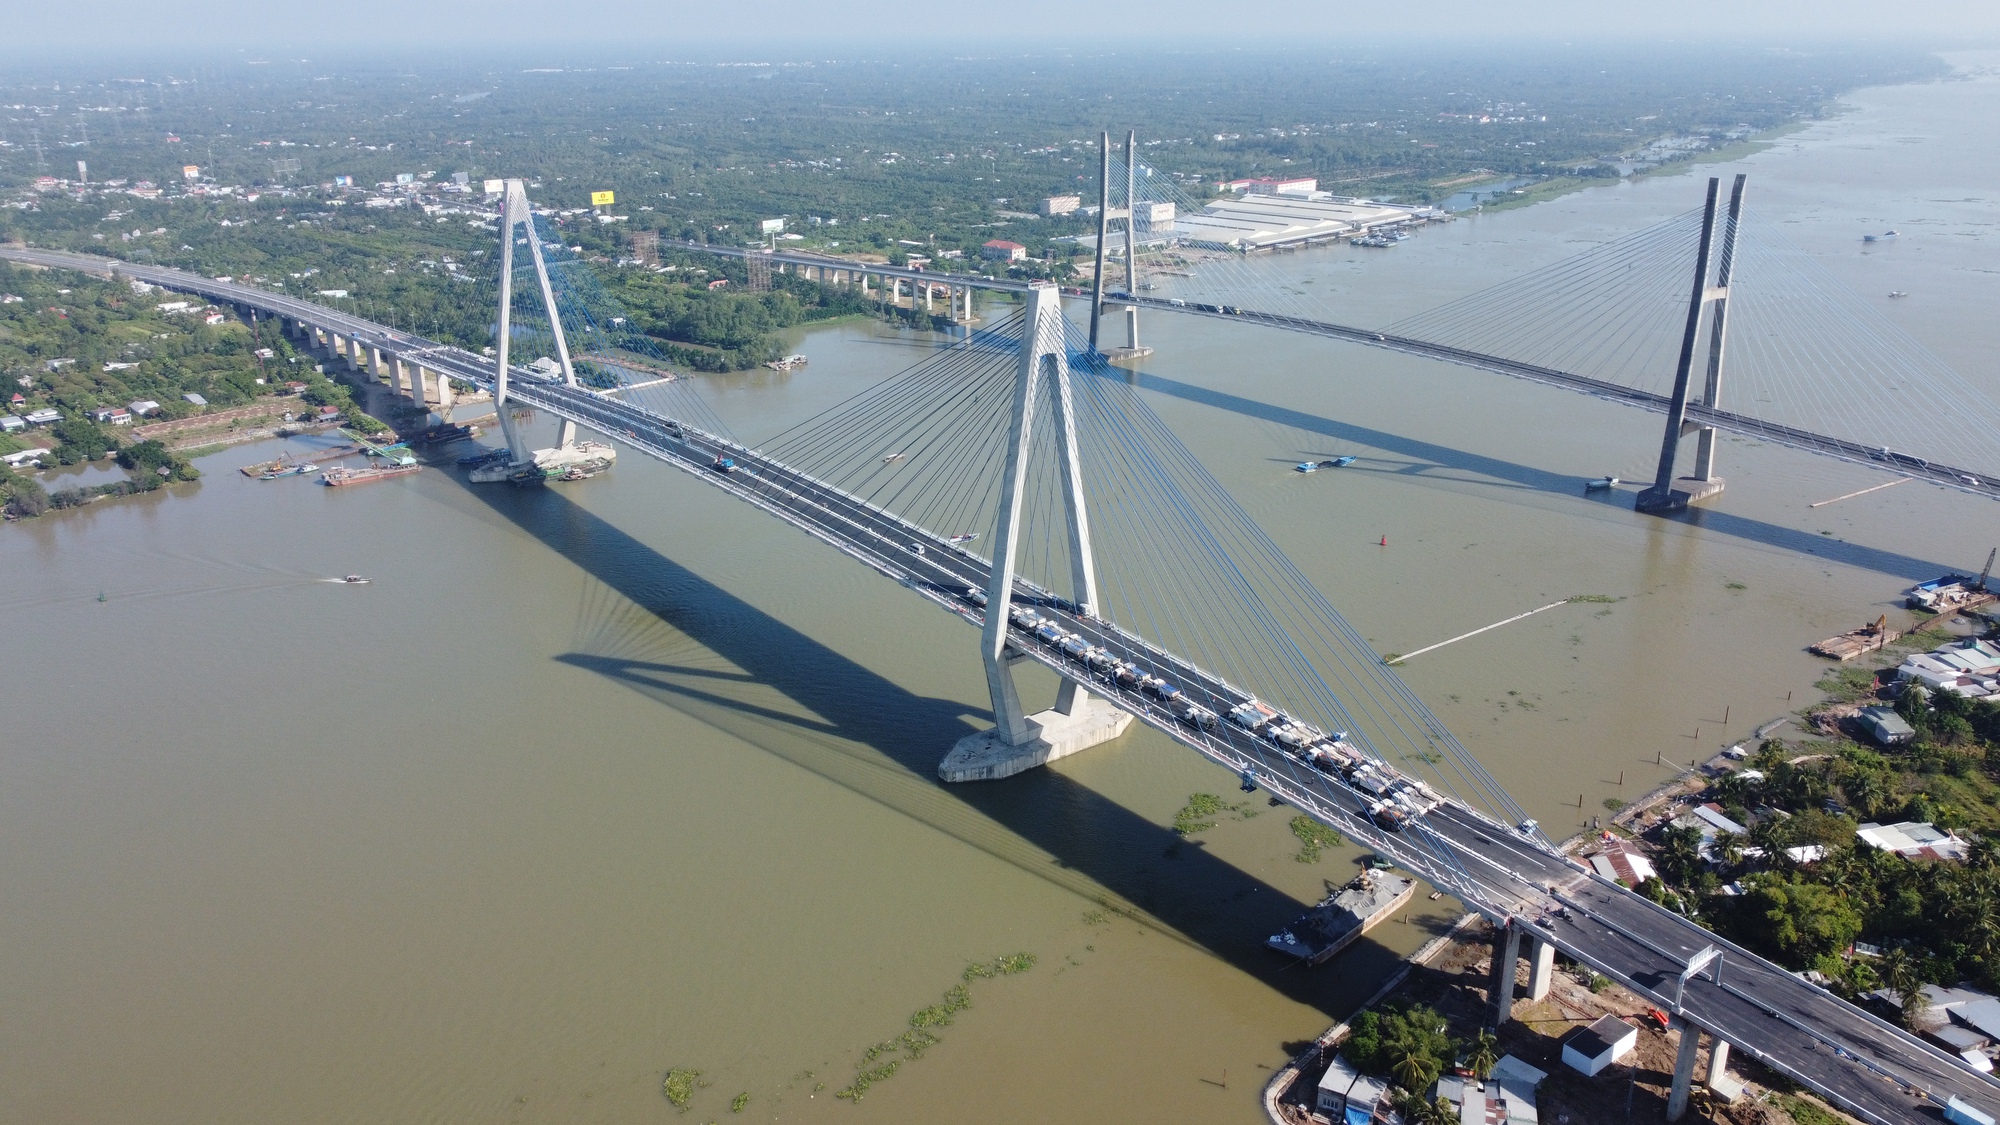 Khánh thành cầu Mỹ Thuận 2, cầu dây văng đầu tiên do kỹ sư Việt Nam thiết kế- Ảnh 4.